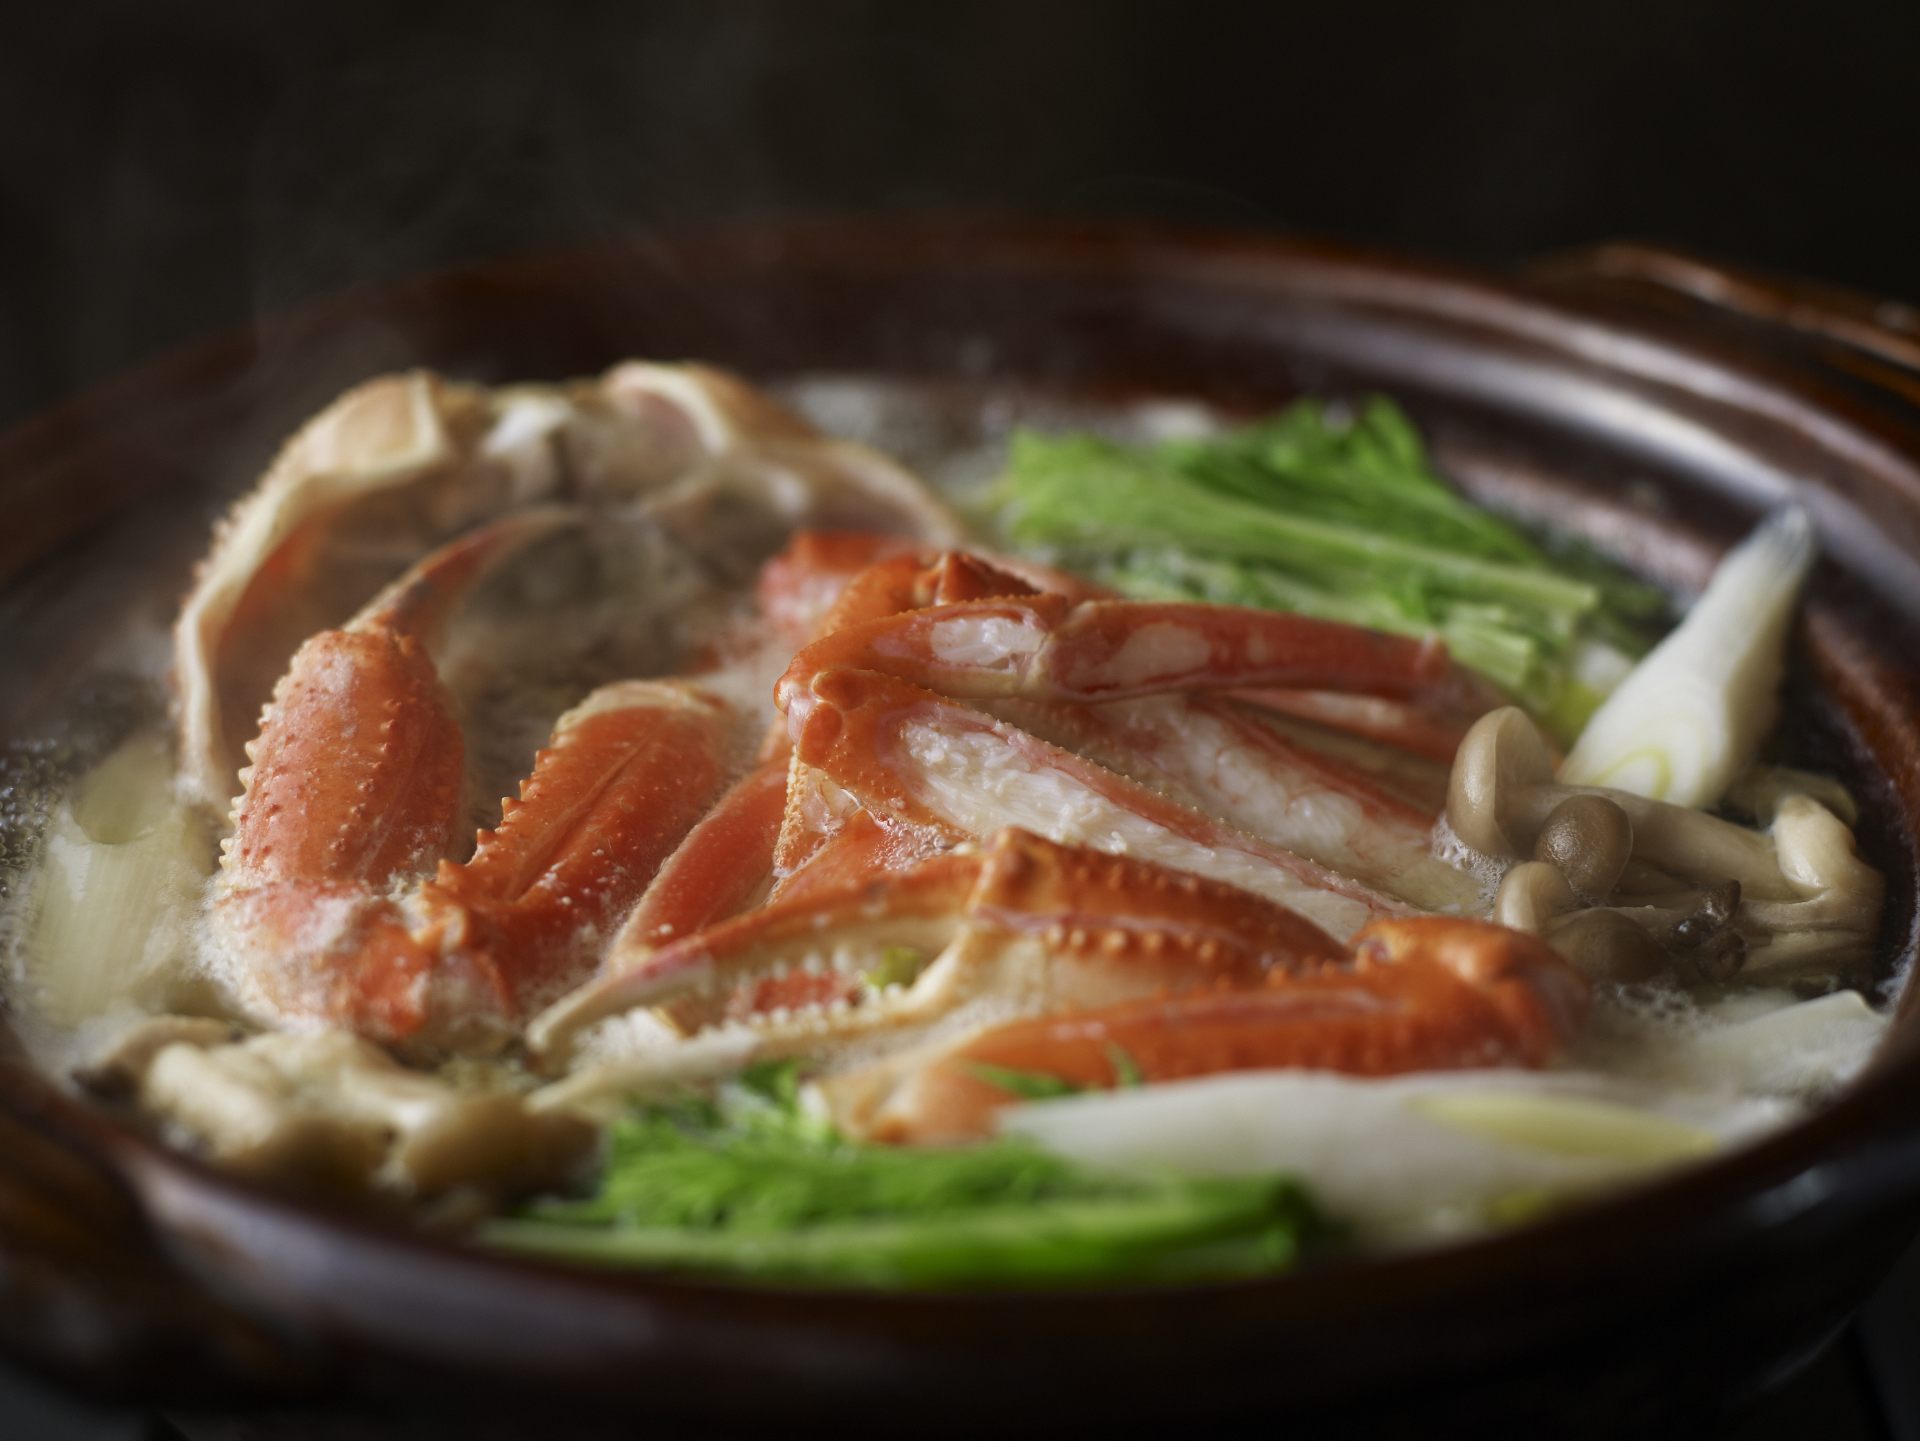 螃蟹季節是從十一月到三月。冬天的城崎溫泉，螃蟹料理是必不可少的。